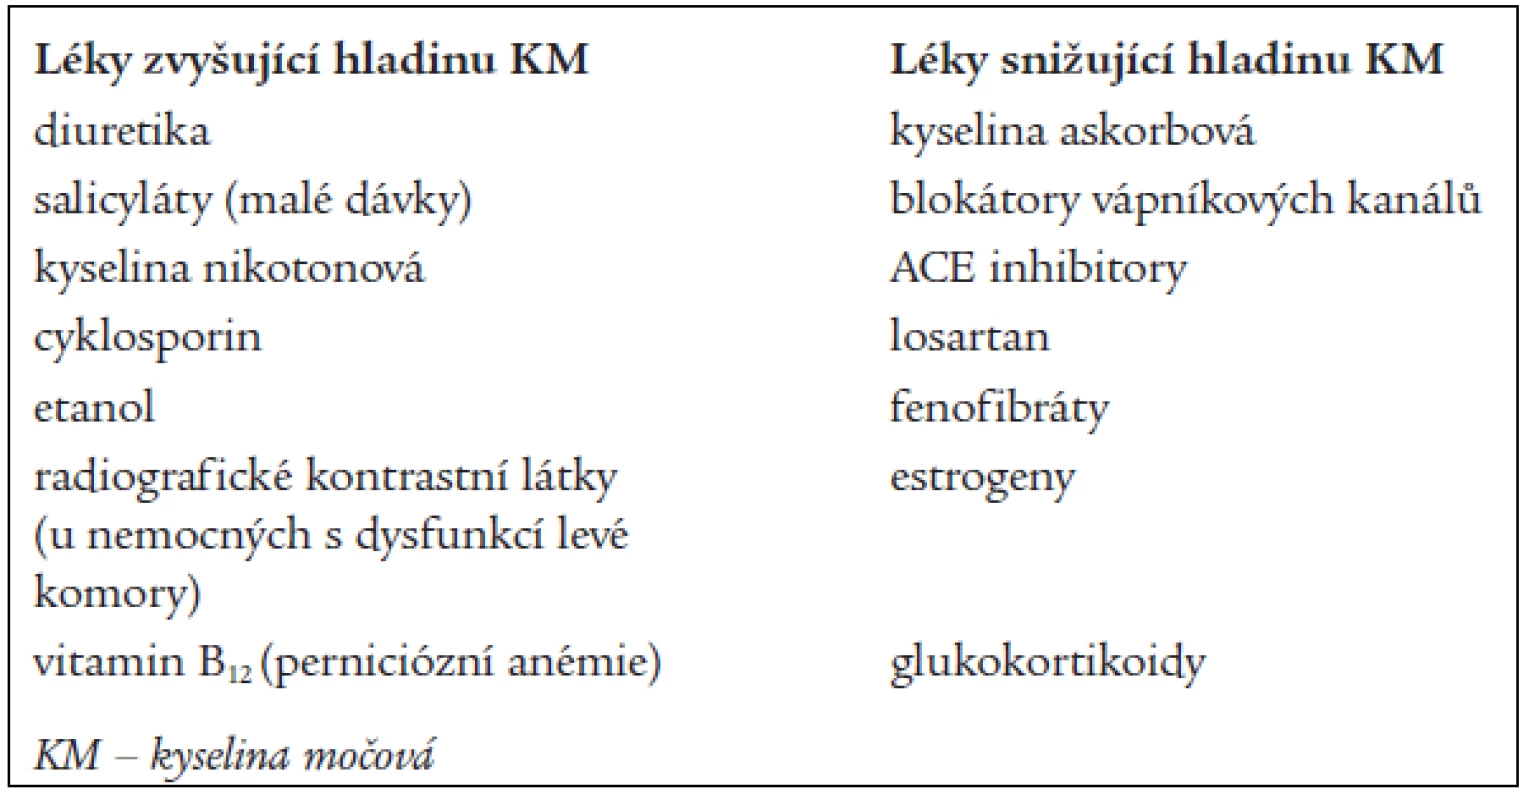 Ovlivnění hladin kyseliny močové léky (mimo urikosurik a urikostatik).